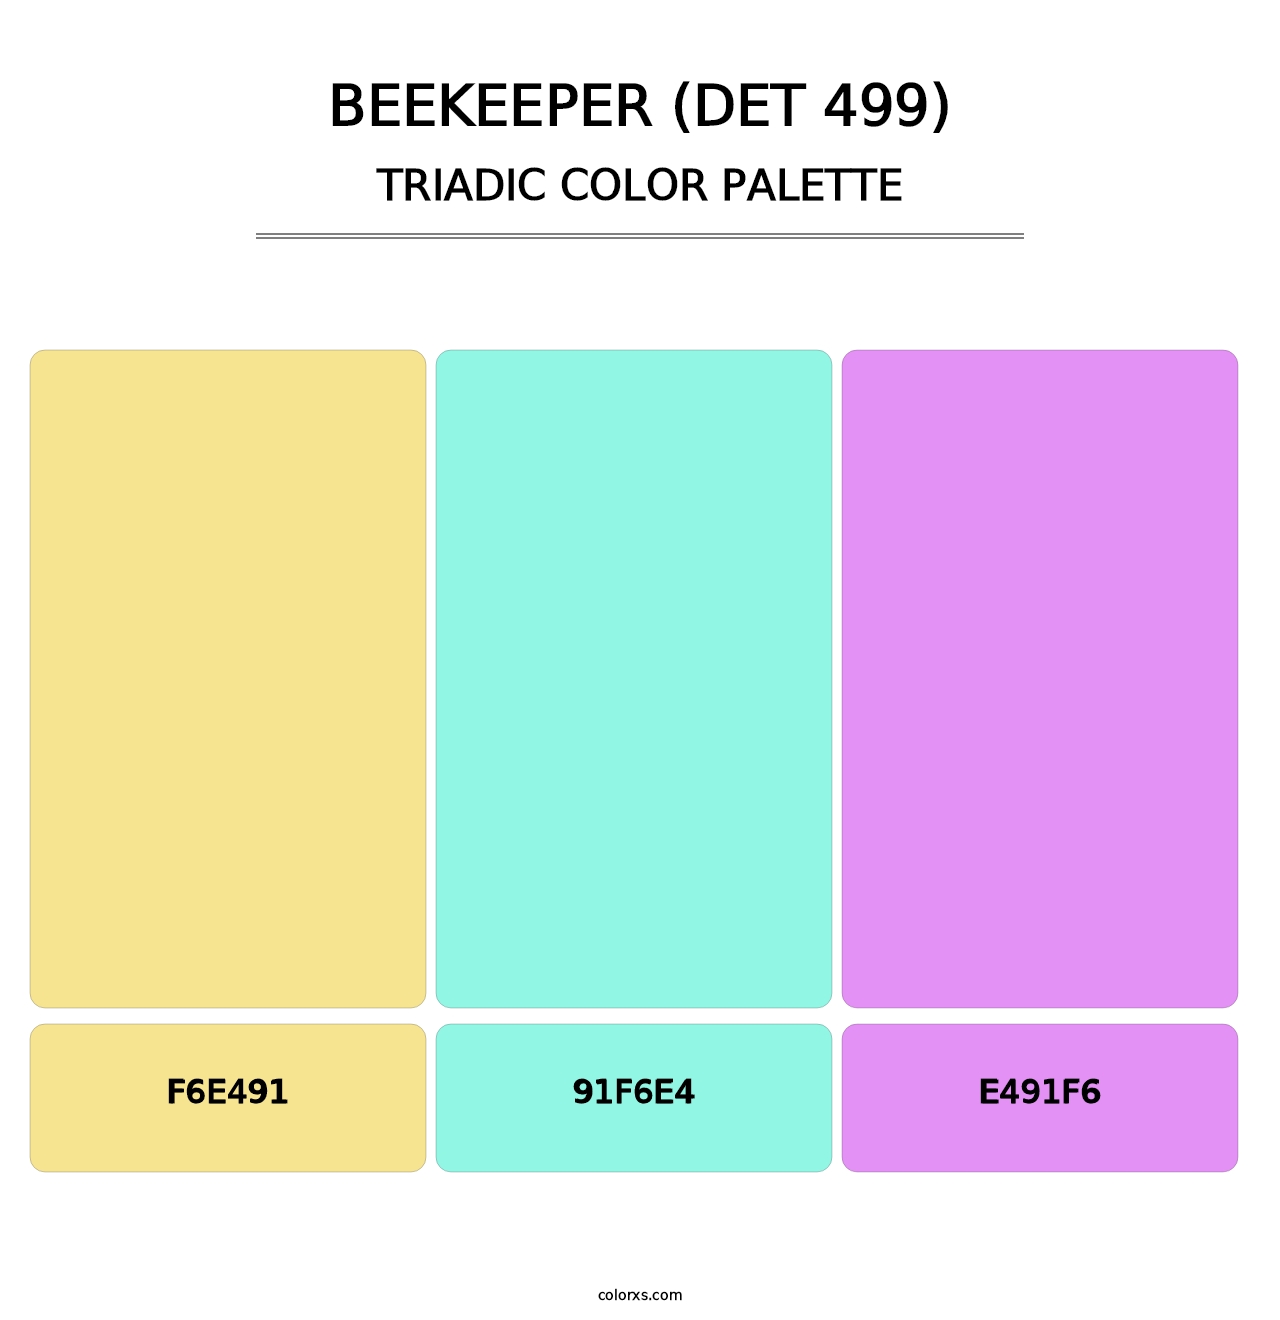 Beekeeper (DET 499) - Triadic Color Palette